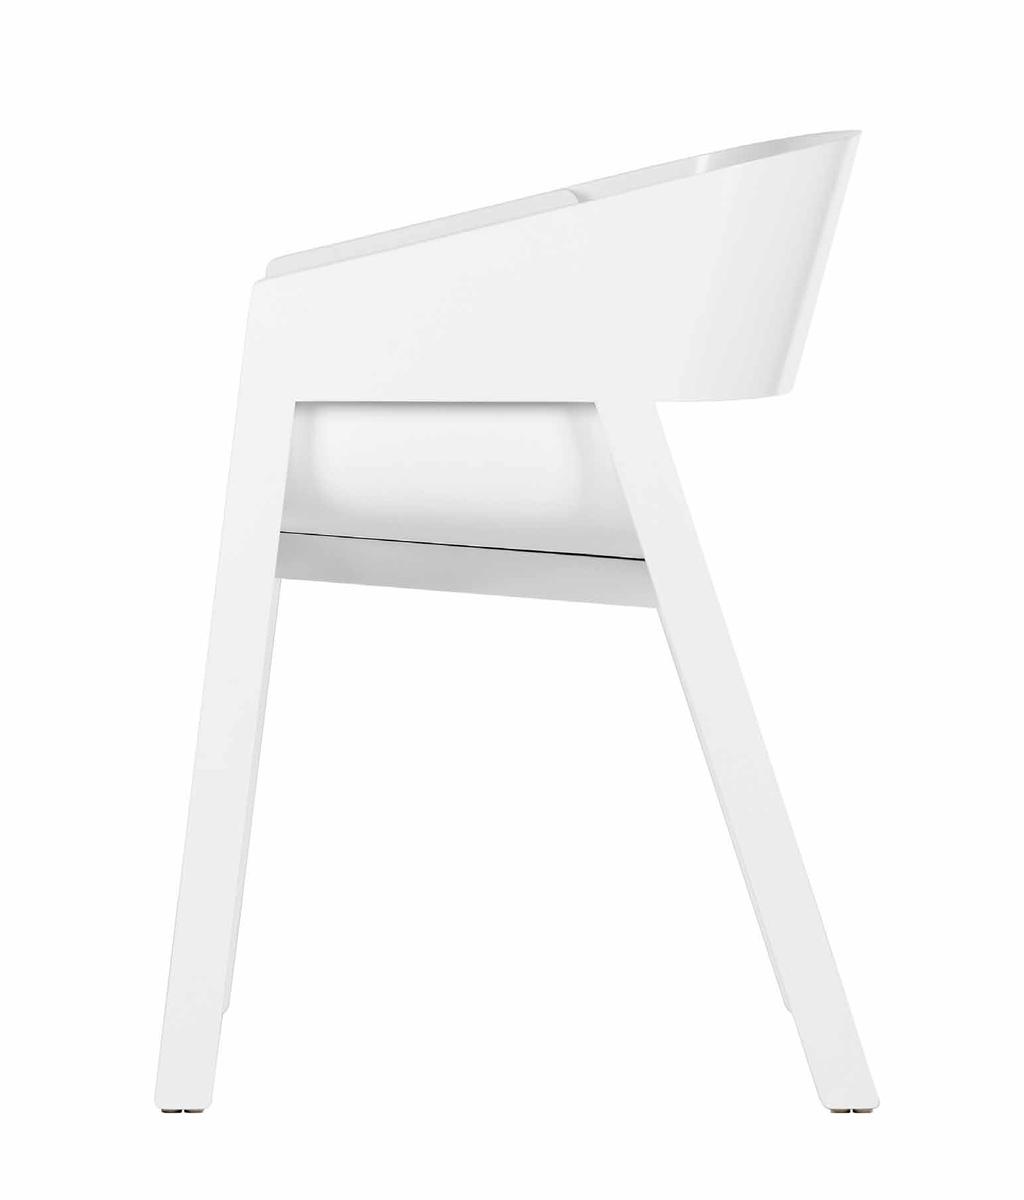 7 kg CZ EN DE Design: ALEXANDER GUFLER A/I Merano Nová moderní židle s přirozenou tváří od mladého italského designéra žijícího v Rakousku, Alexe Guflera, nese název jeho rodiště, italského